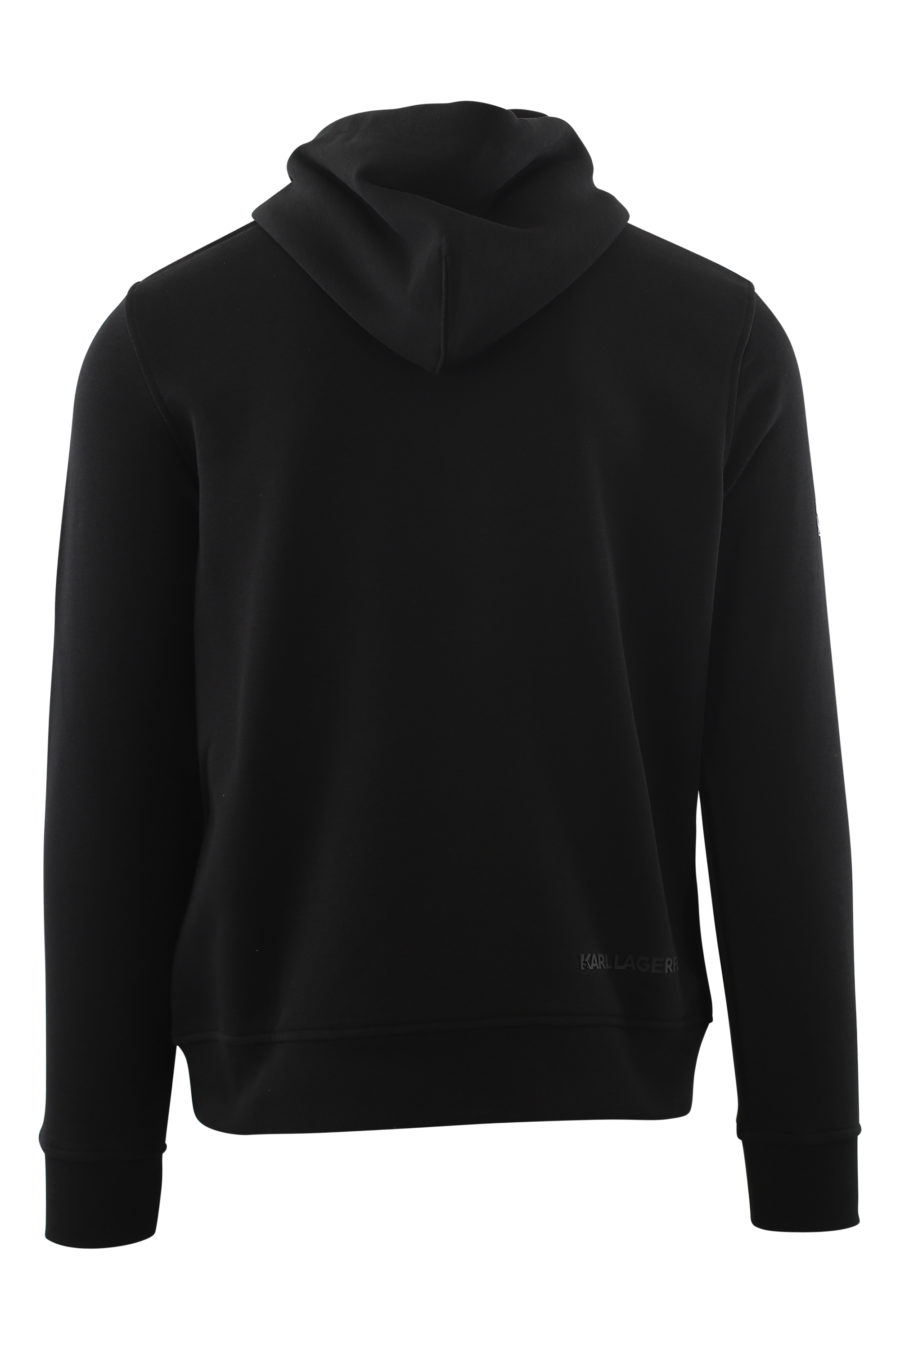 Schwarzes Kapuzensweatshirt mit geprägtem Silberlogo - IMG 6571